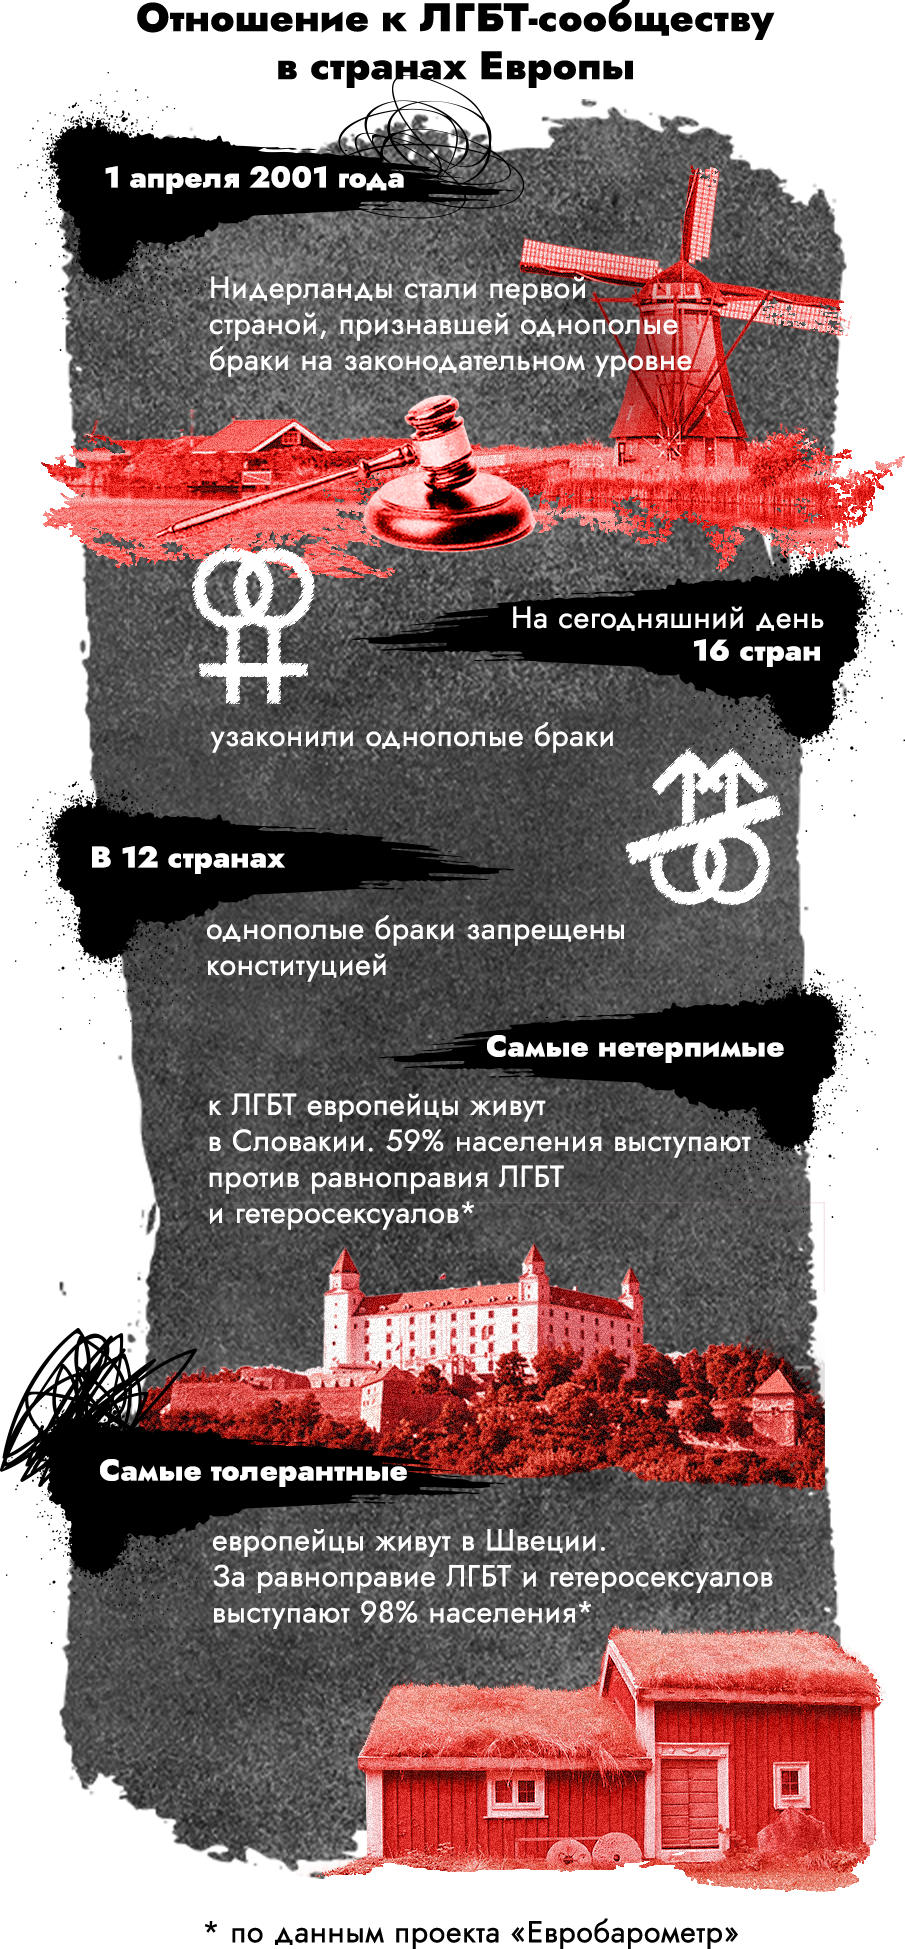 В Петербурге закрылся один из старейших гей-клубов после запрета в РФ «движения ЛГБТ»